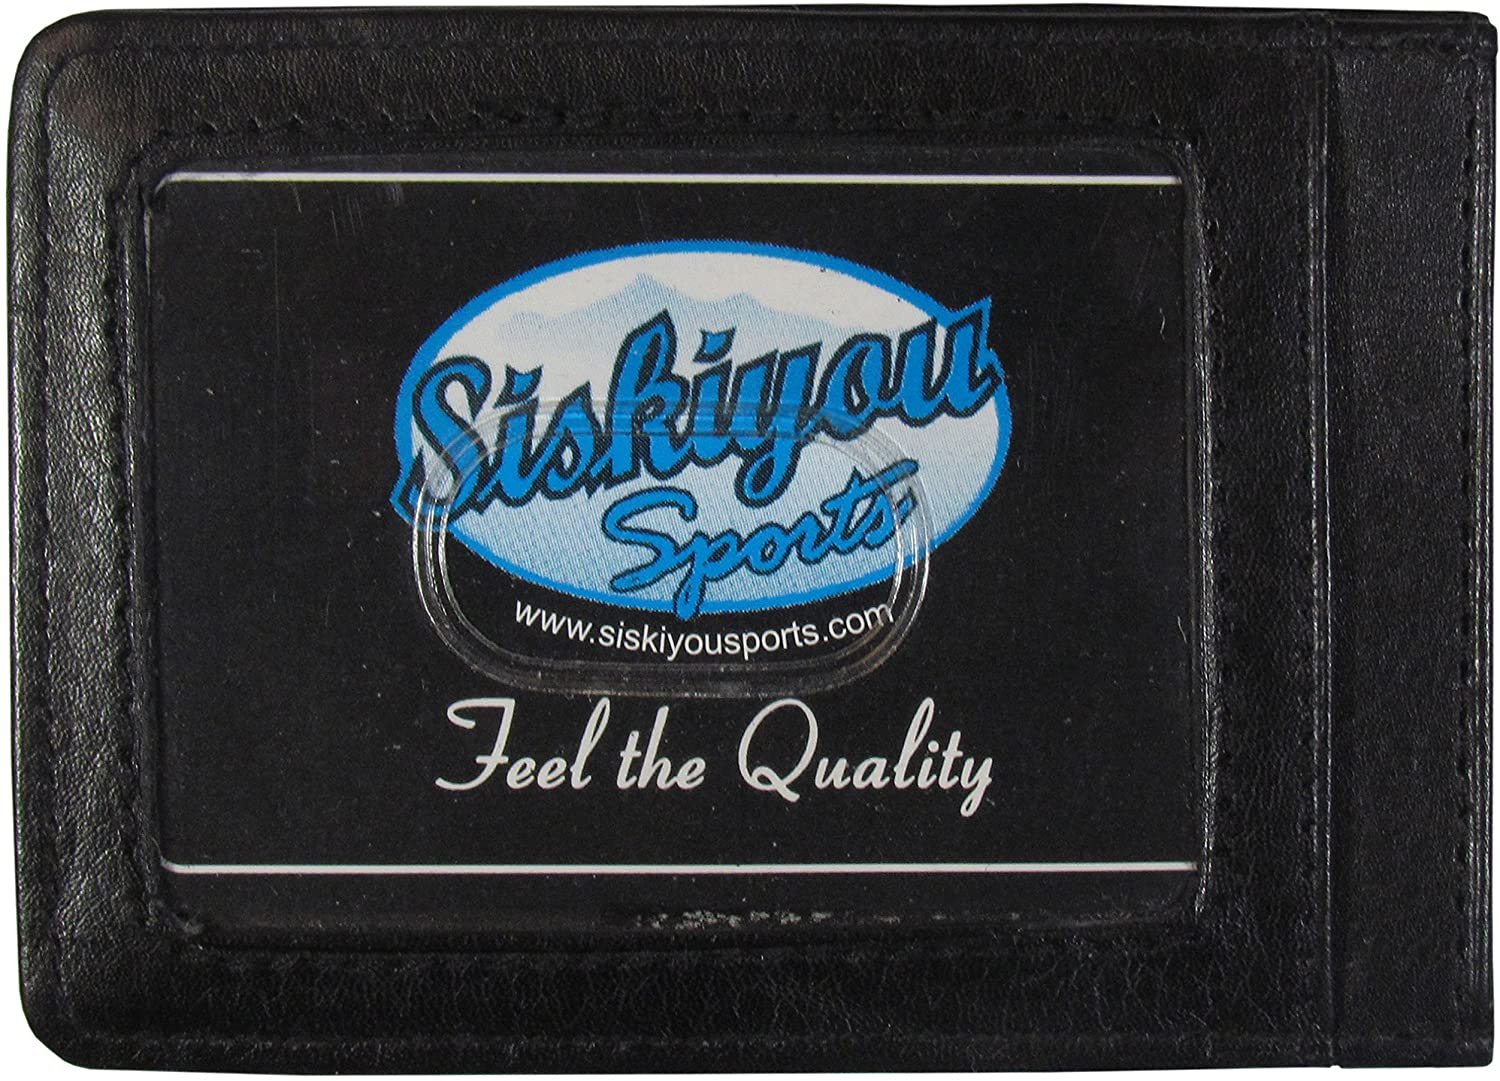 San Jose Sharks Black Leather Wallet, Front Pocket Magnetic Money Clip, Printed Logo